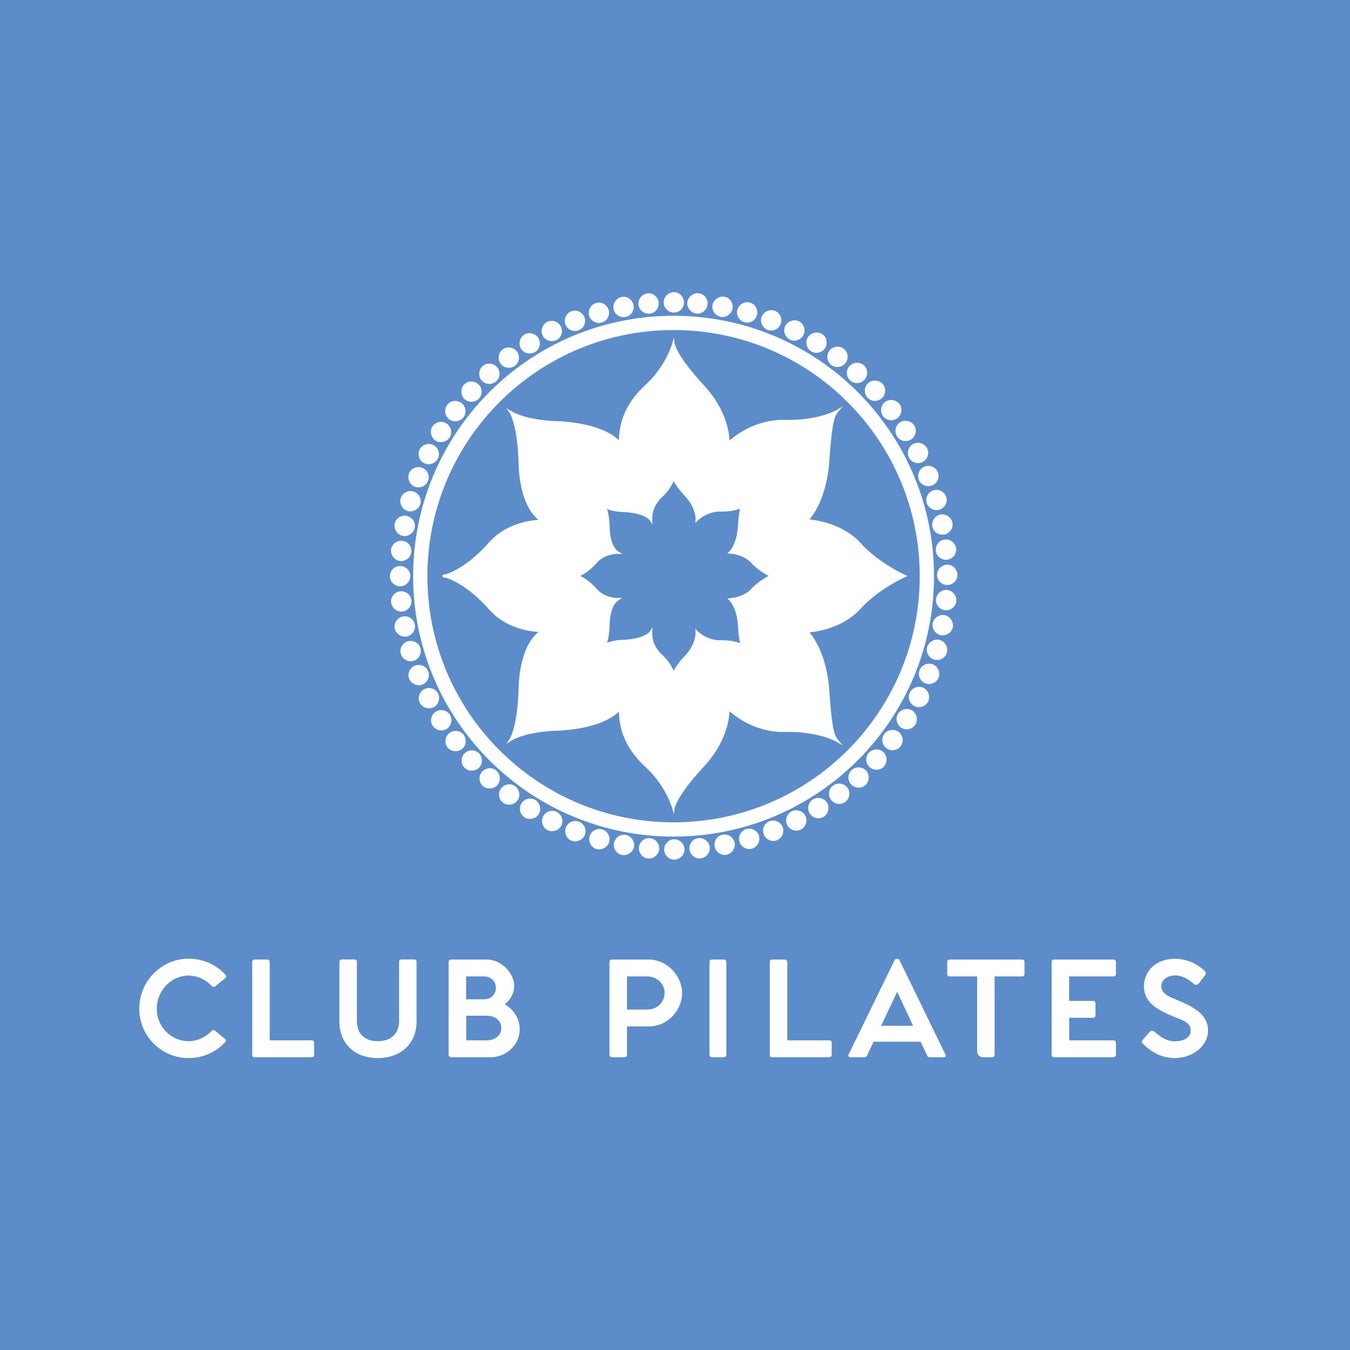 『CLUB PILATES(クラブピラティス)』について